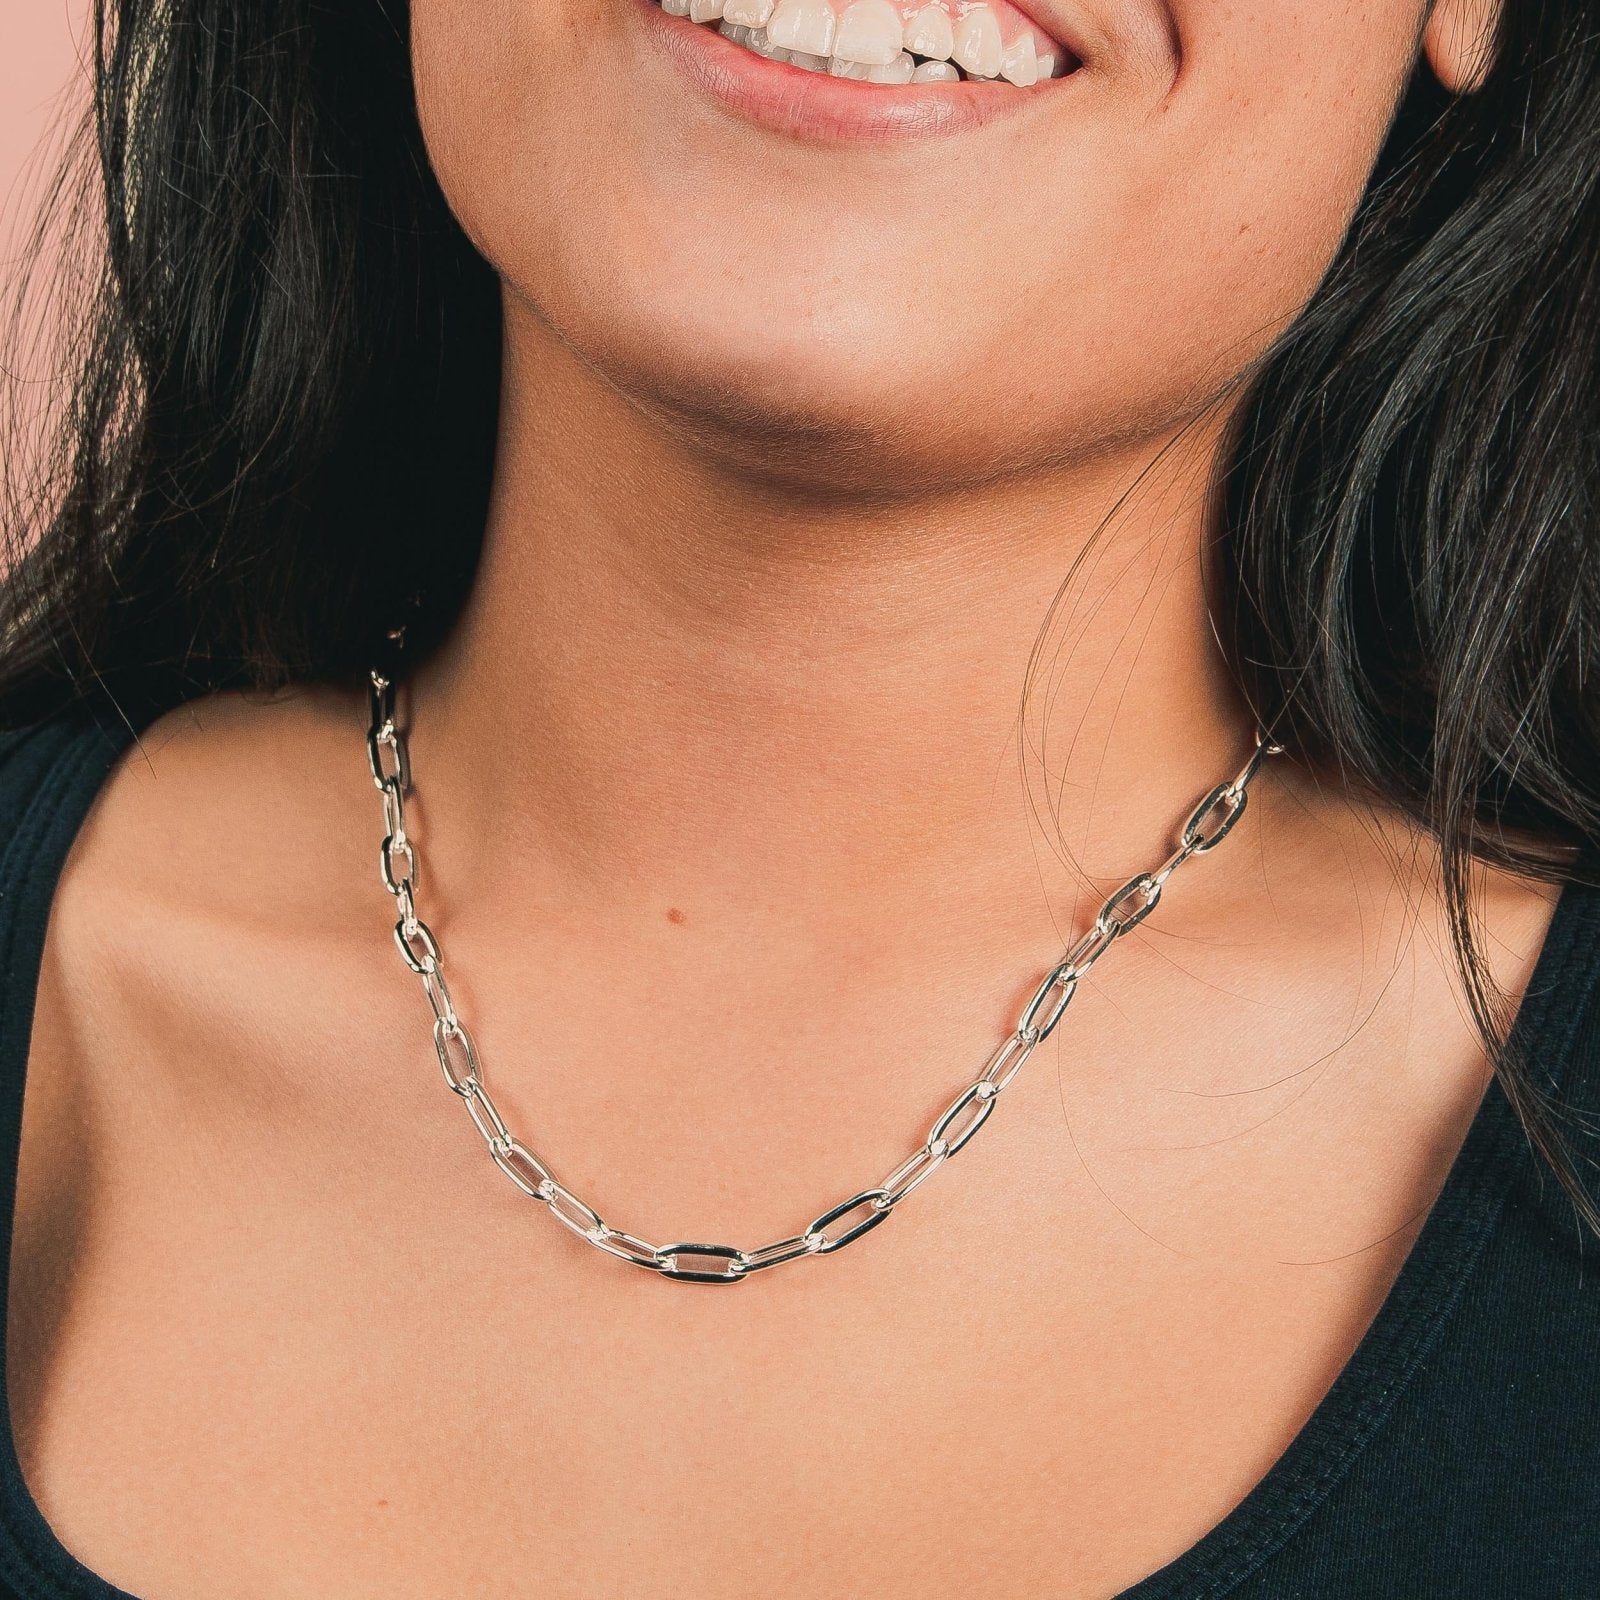 Bristol Chain Necklace - Melanie Golden Jewelry - chain necklaces, essential chains, necklace, paperclip